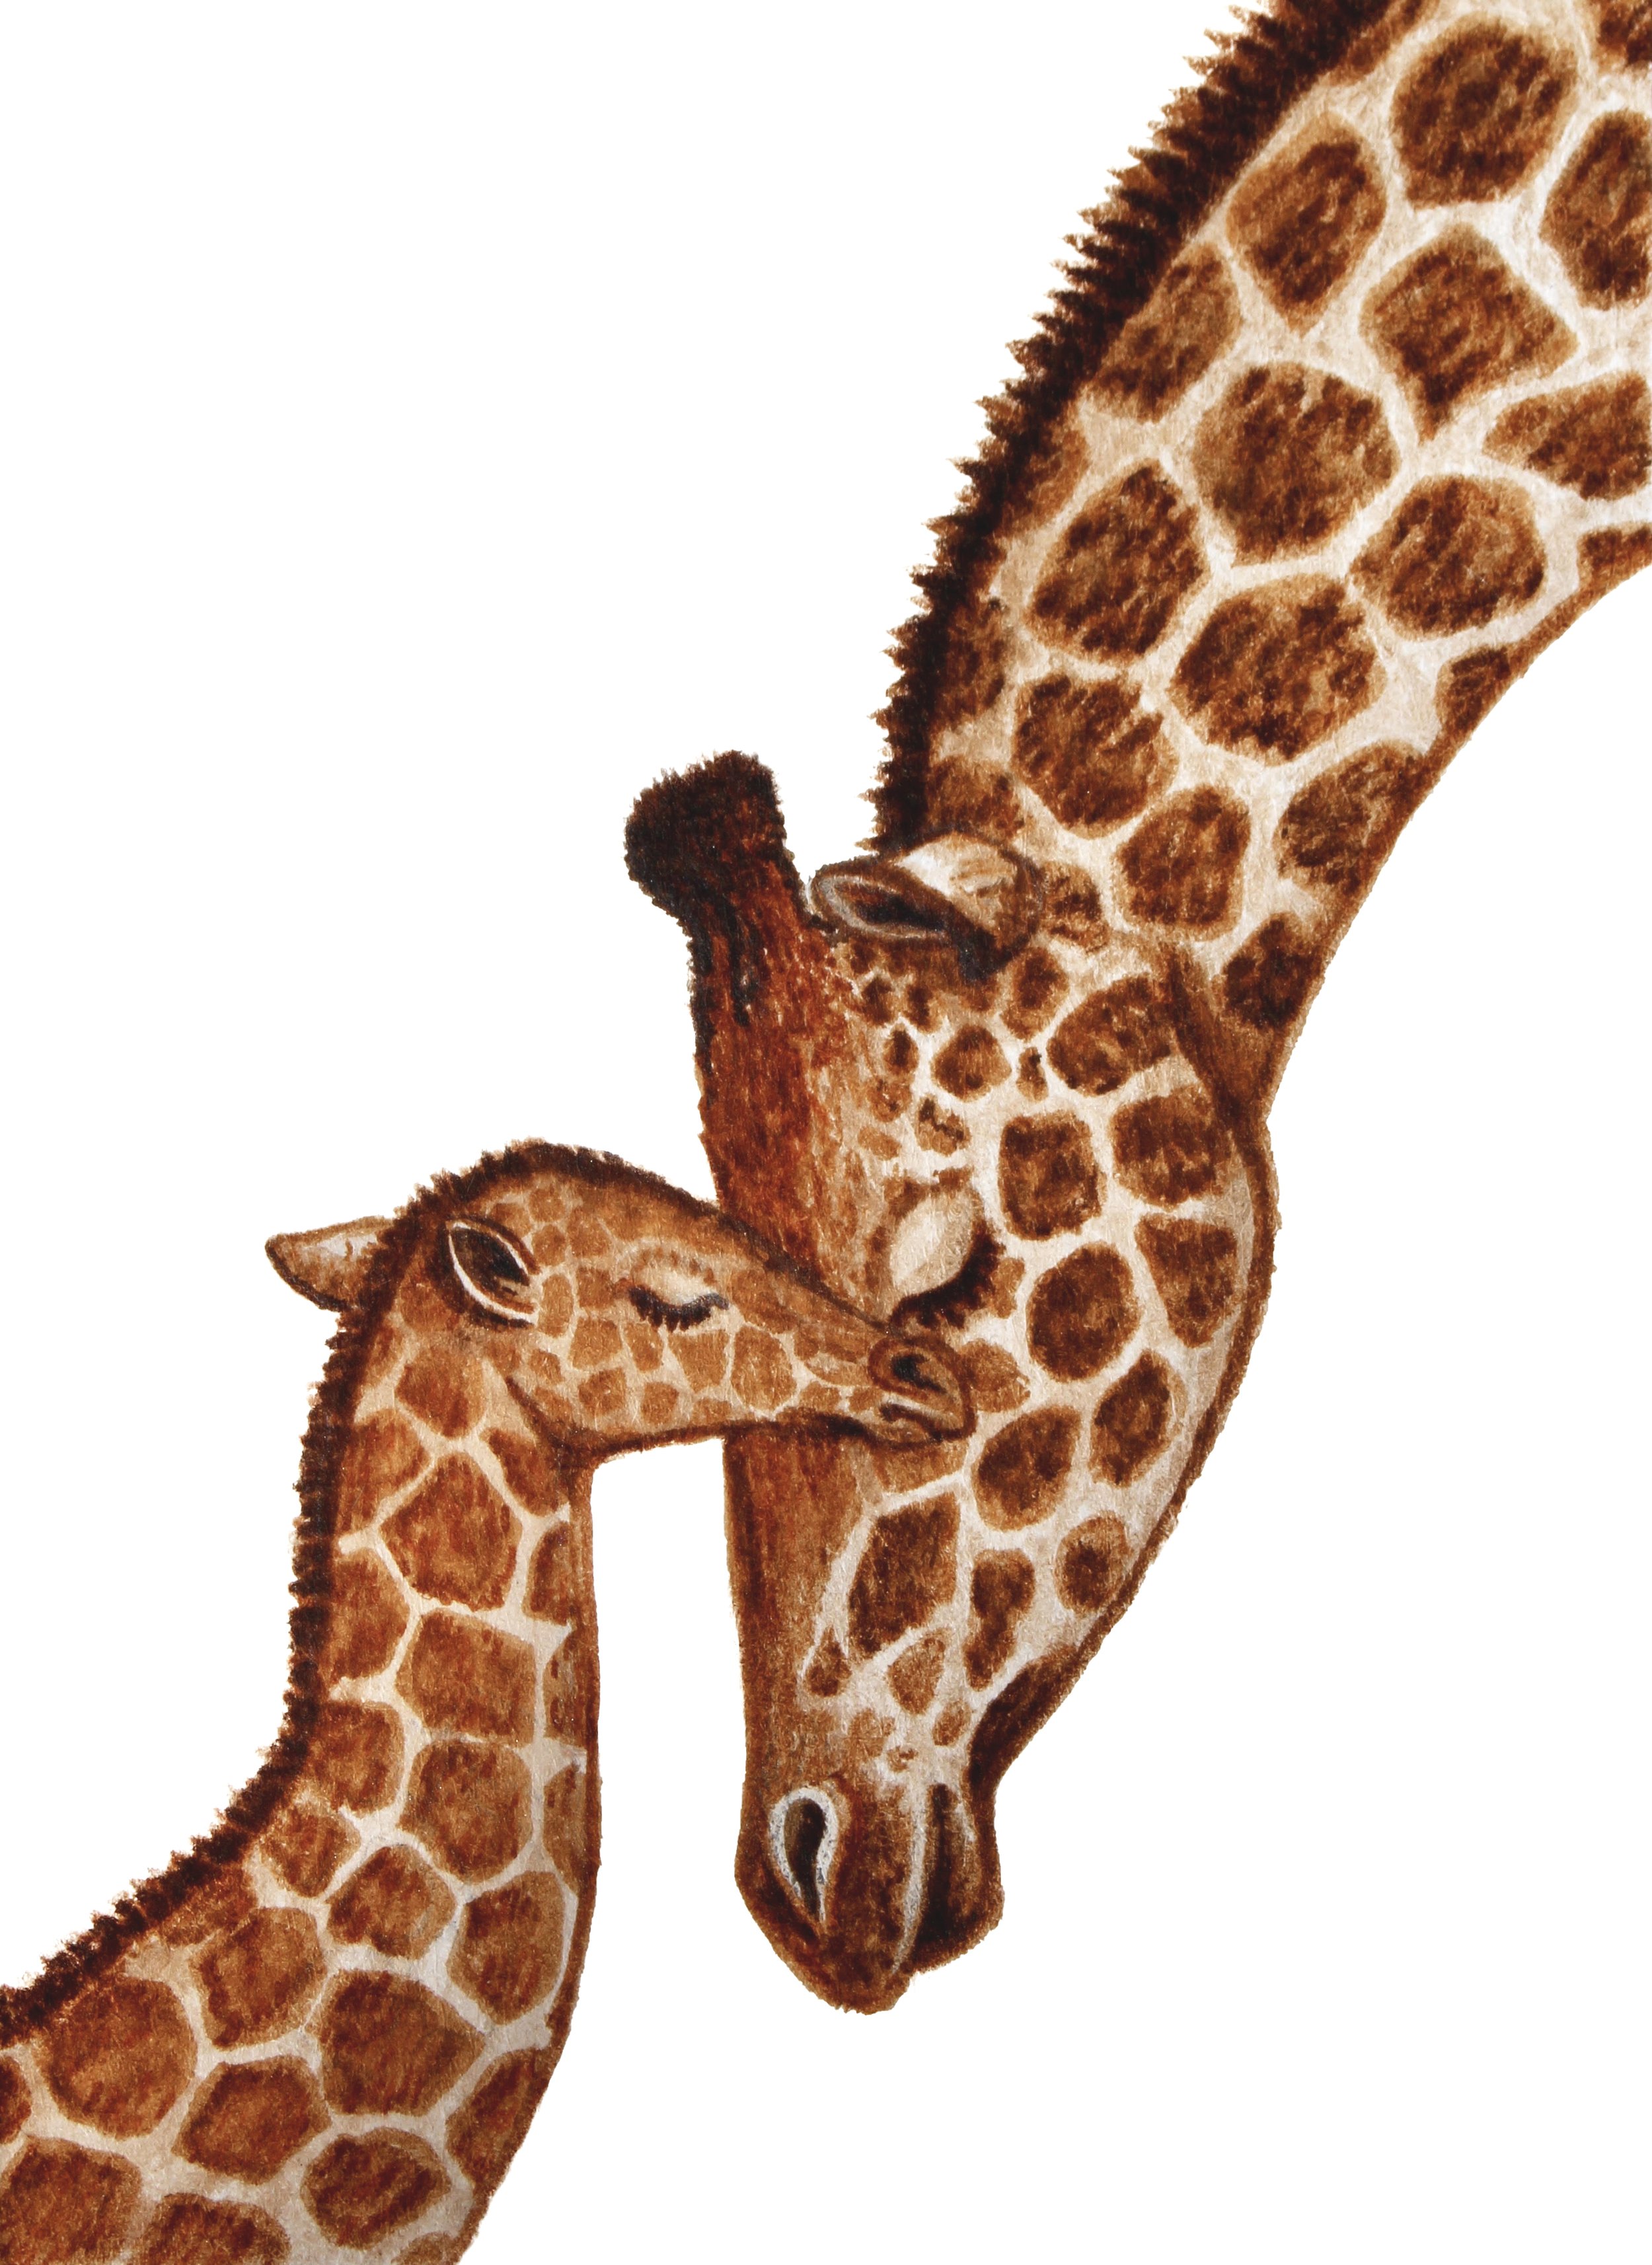 GiraffeMomBaby.jpg